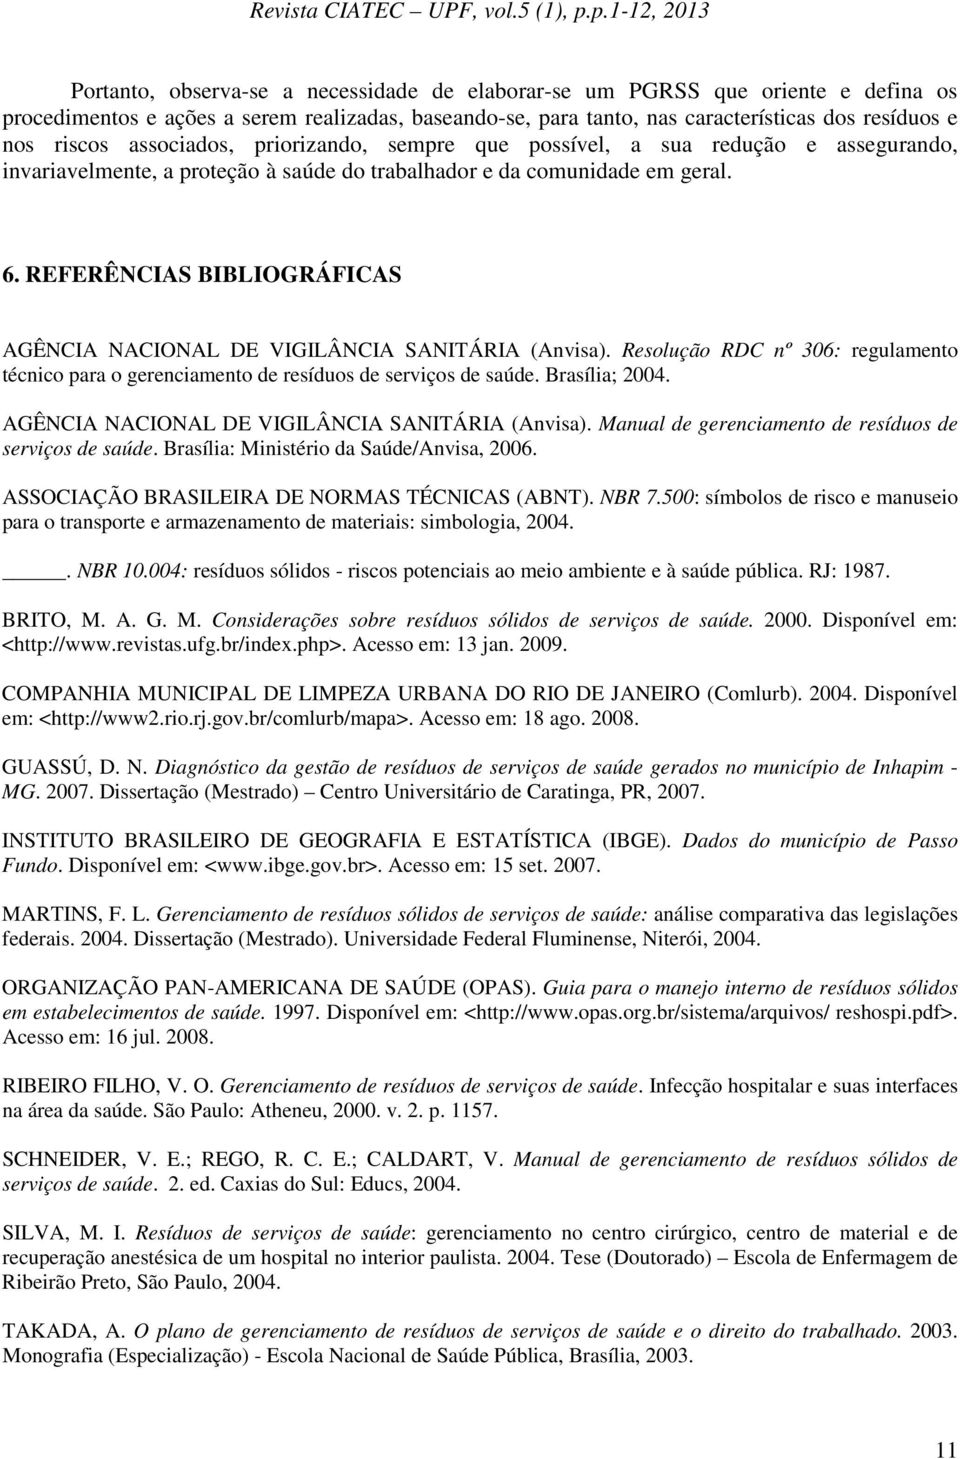 REFERÊNCIAS BIBLIOGRÁFICAS AGÊNCIA NACIONAL DE VIGILÂNCIA SANITÁRIA (Anvisa). Resolução RDC nº 306: regulamento técnico para o gerenciamento de resíduos de serviços de saúde. Brasília; 2004.